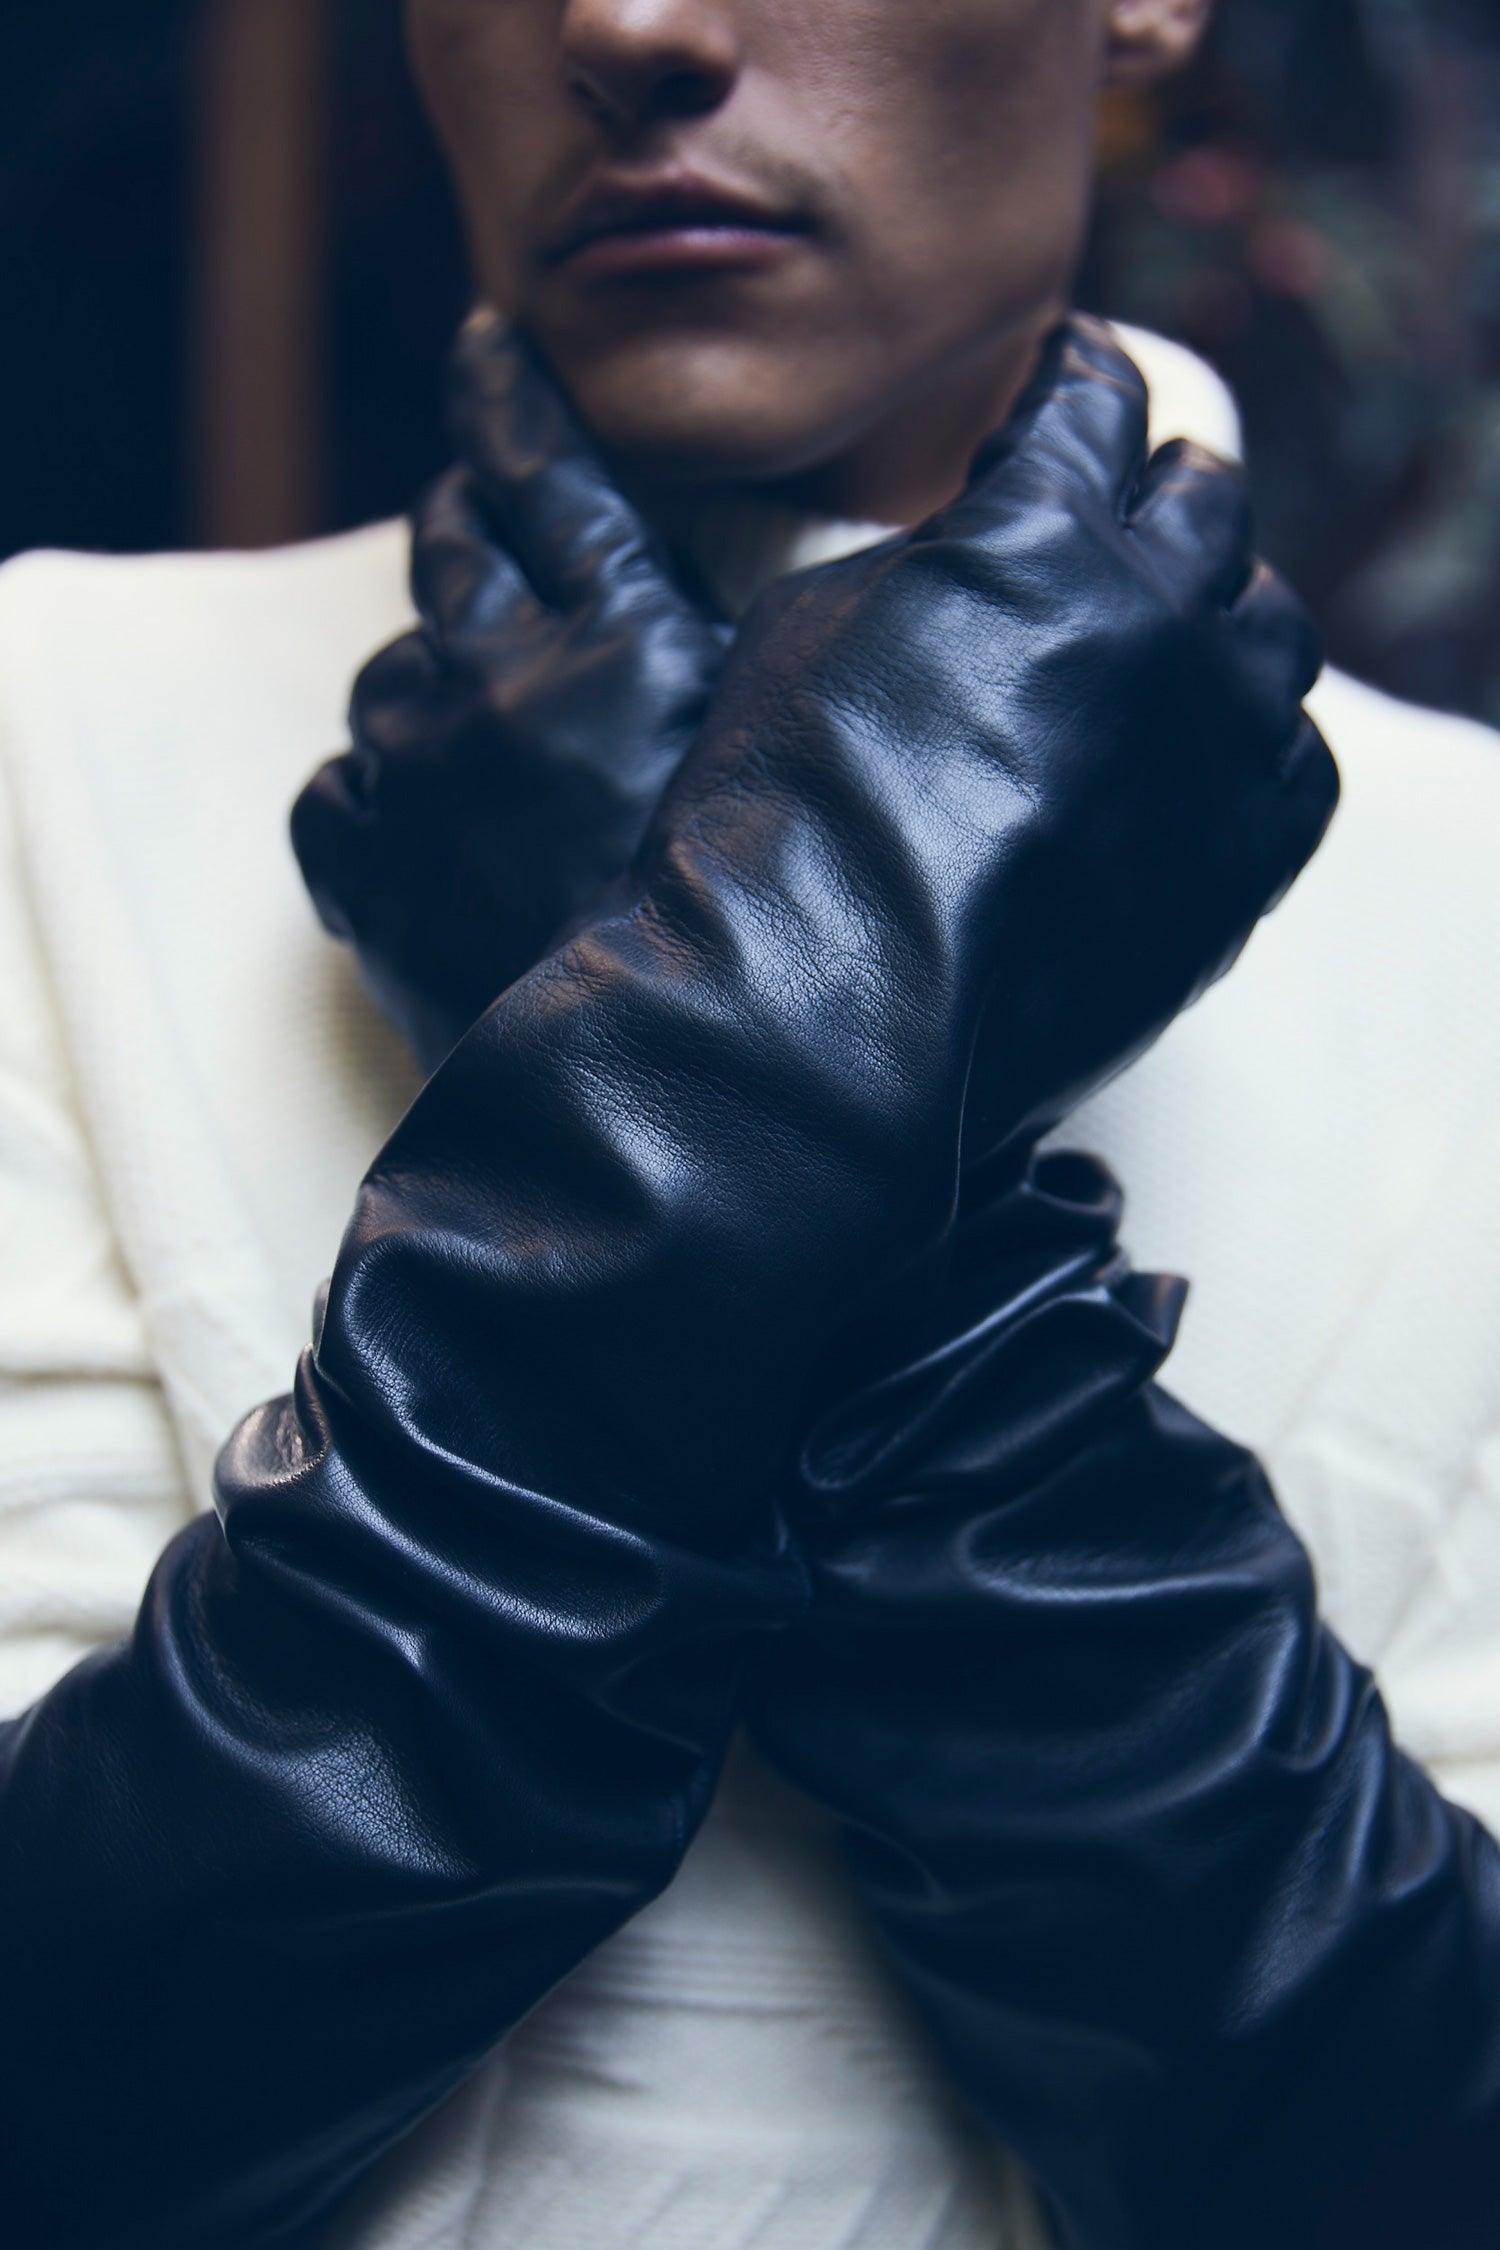 Men's Stack Glove, black leather gloves.